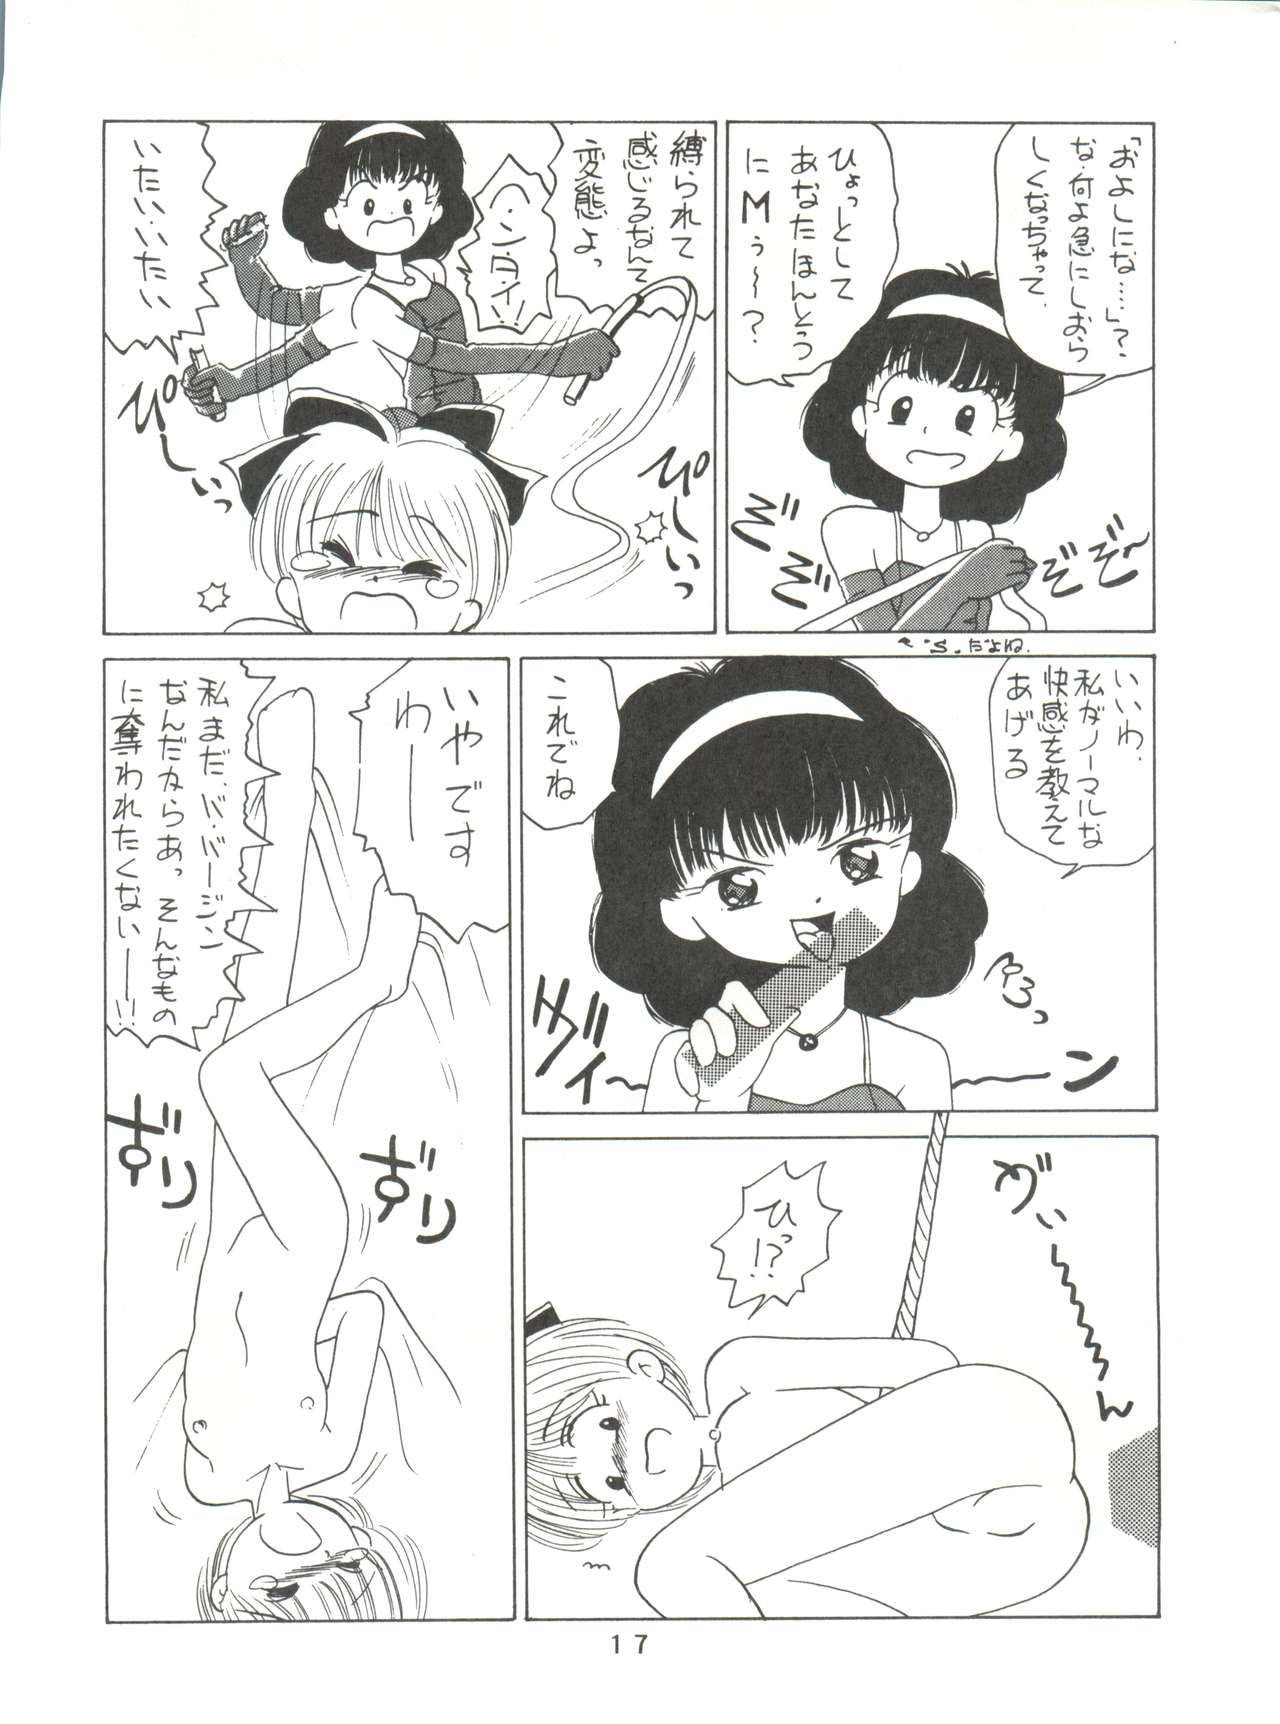 [Mitsuiri House]  MI 16 Mitsuiri House 6 (Hime-chan's Ribbon) + [Ariari no Nashinashi] See You Again 10 (Various) page 17 full